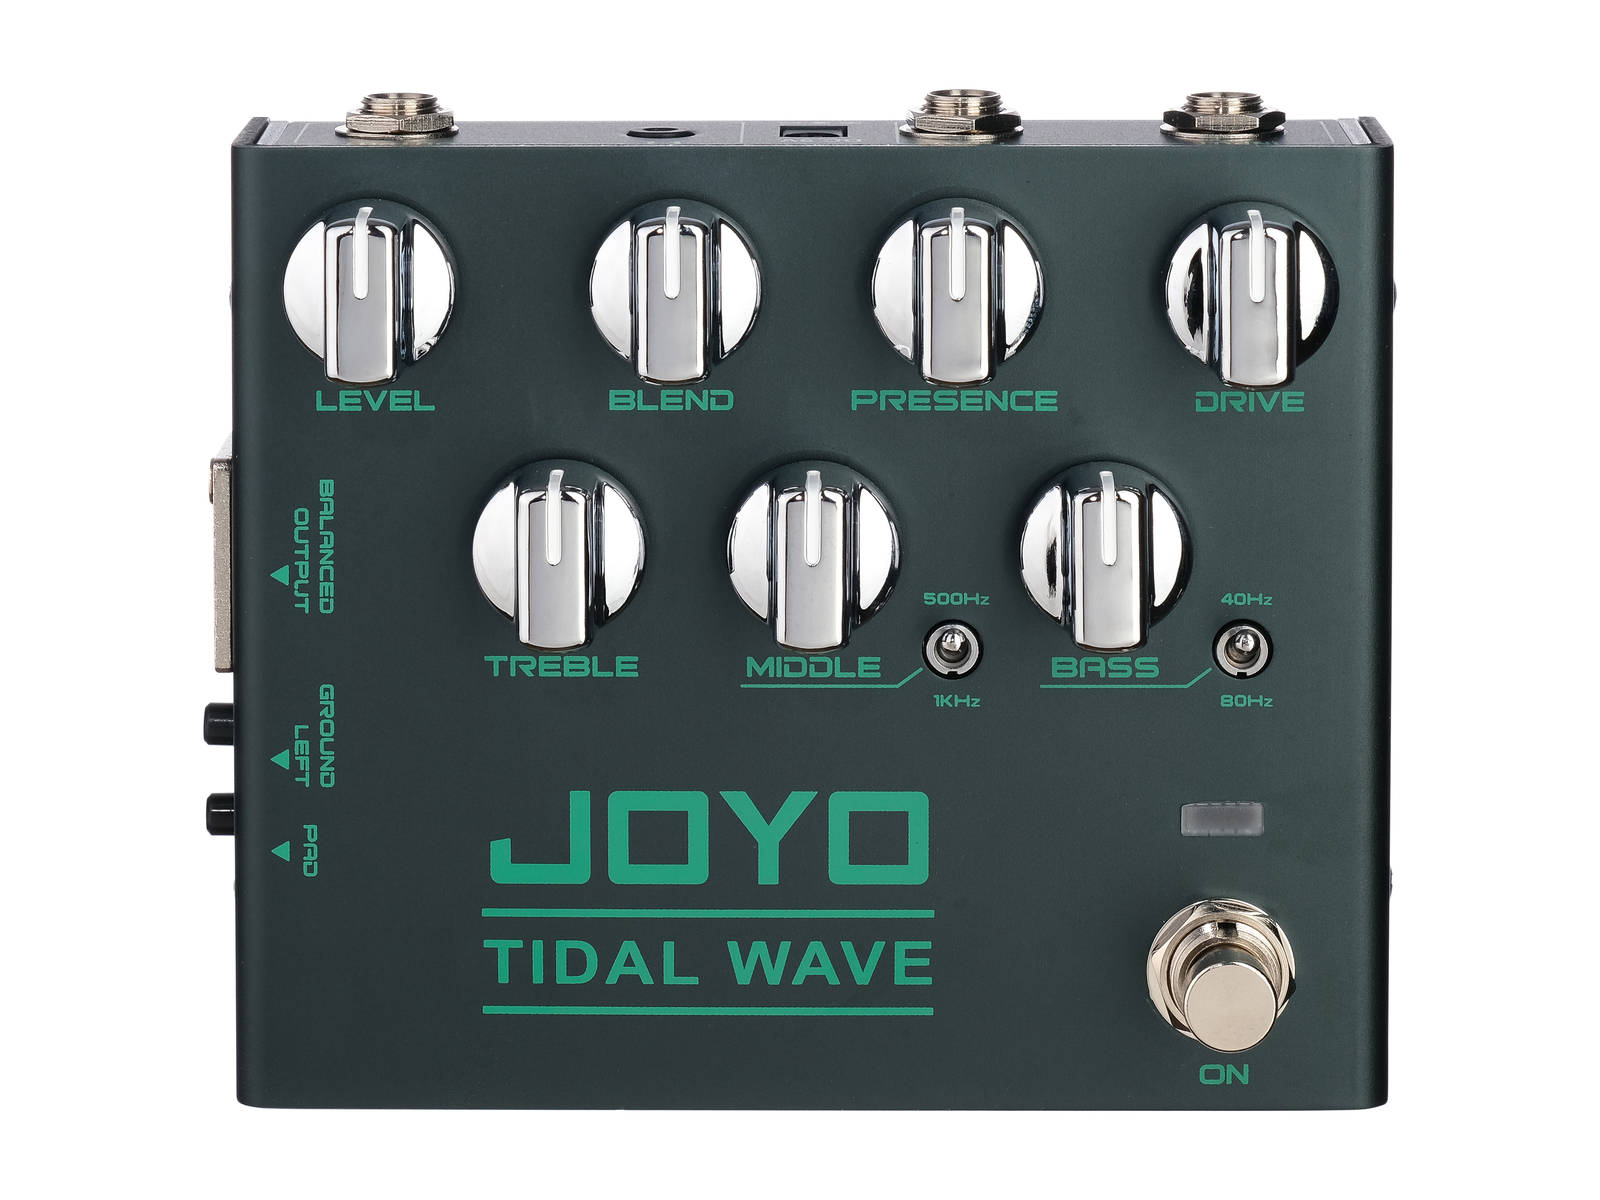 Процессоры эффектов и педали для гитары Joyo R-30 Tidal Wave cherub gt 4 g tone 3 полосный эквалайзер эквалайзер предусилитель для акустической гитары пьезодатчик светодиодный тюнер